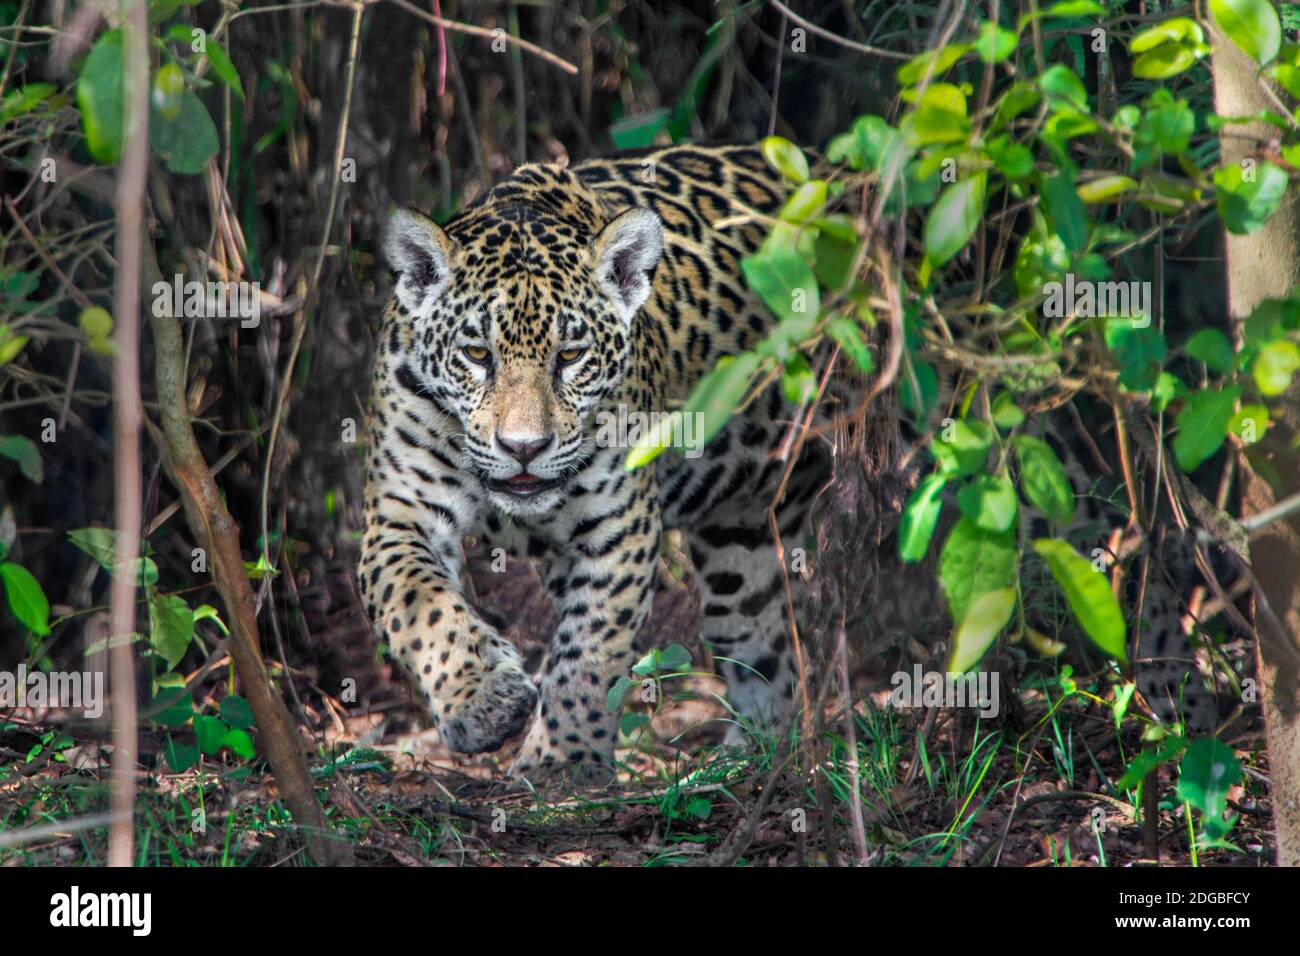 Jaguar (Panthera onca), Pantanal Wetlands, Brazil Stock Photo